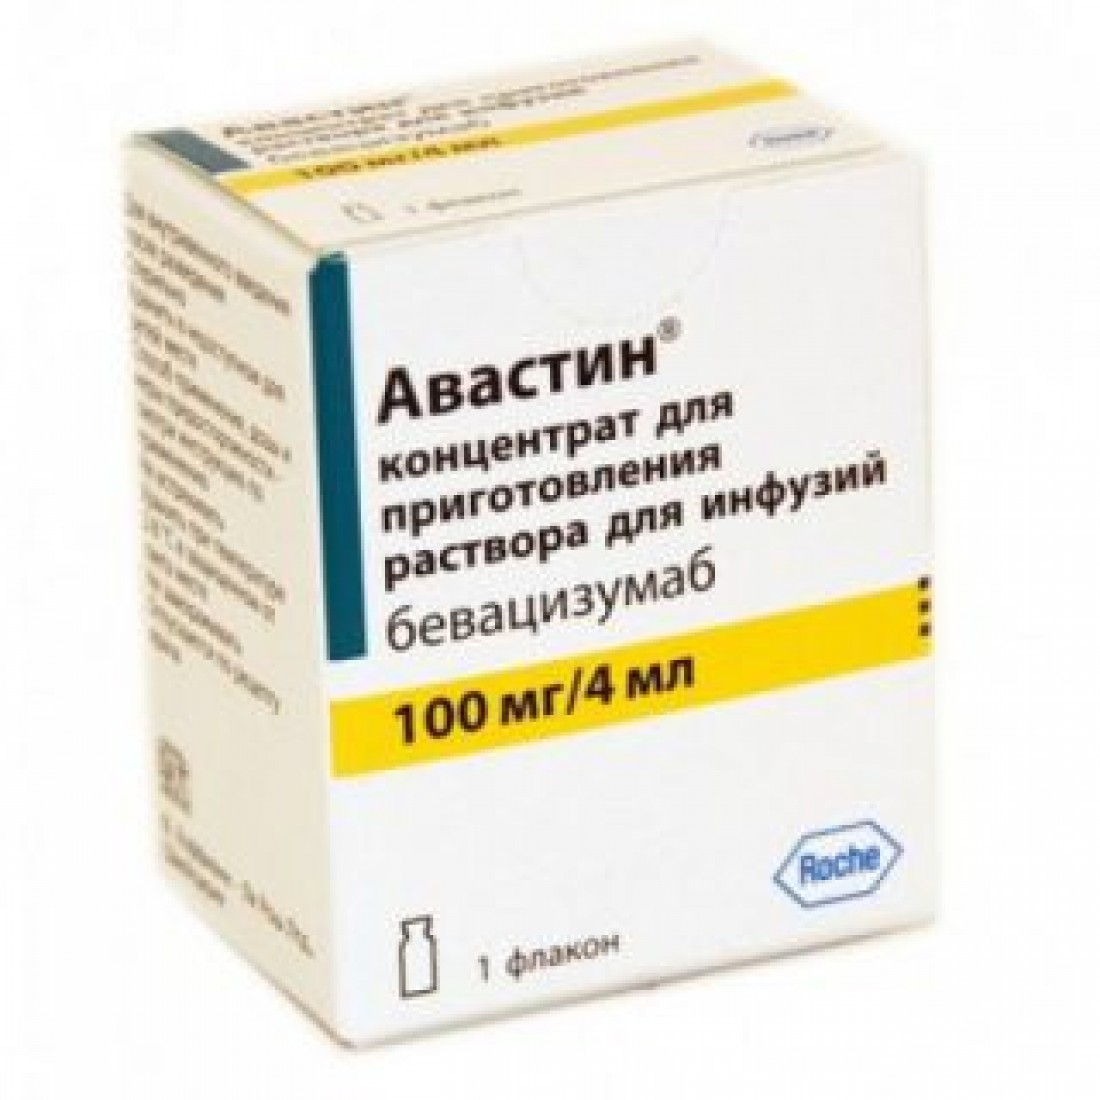 Авастин для инфузий 100 мг/ 4 мл флакон №1: инструкция, цена, отзывы .